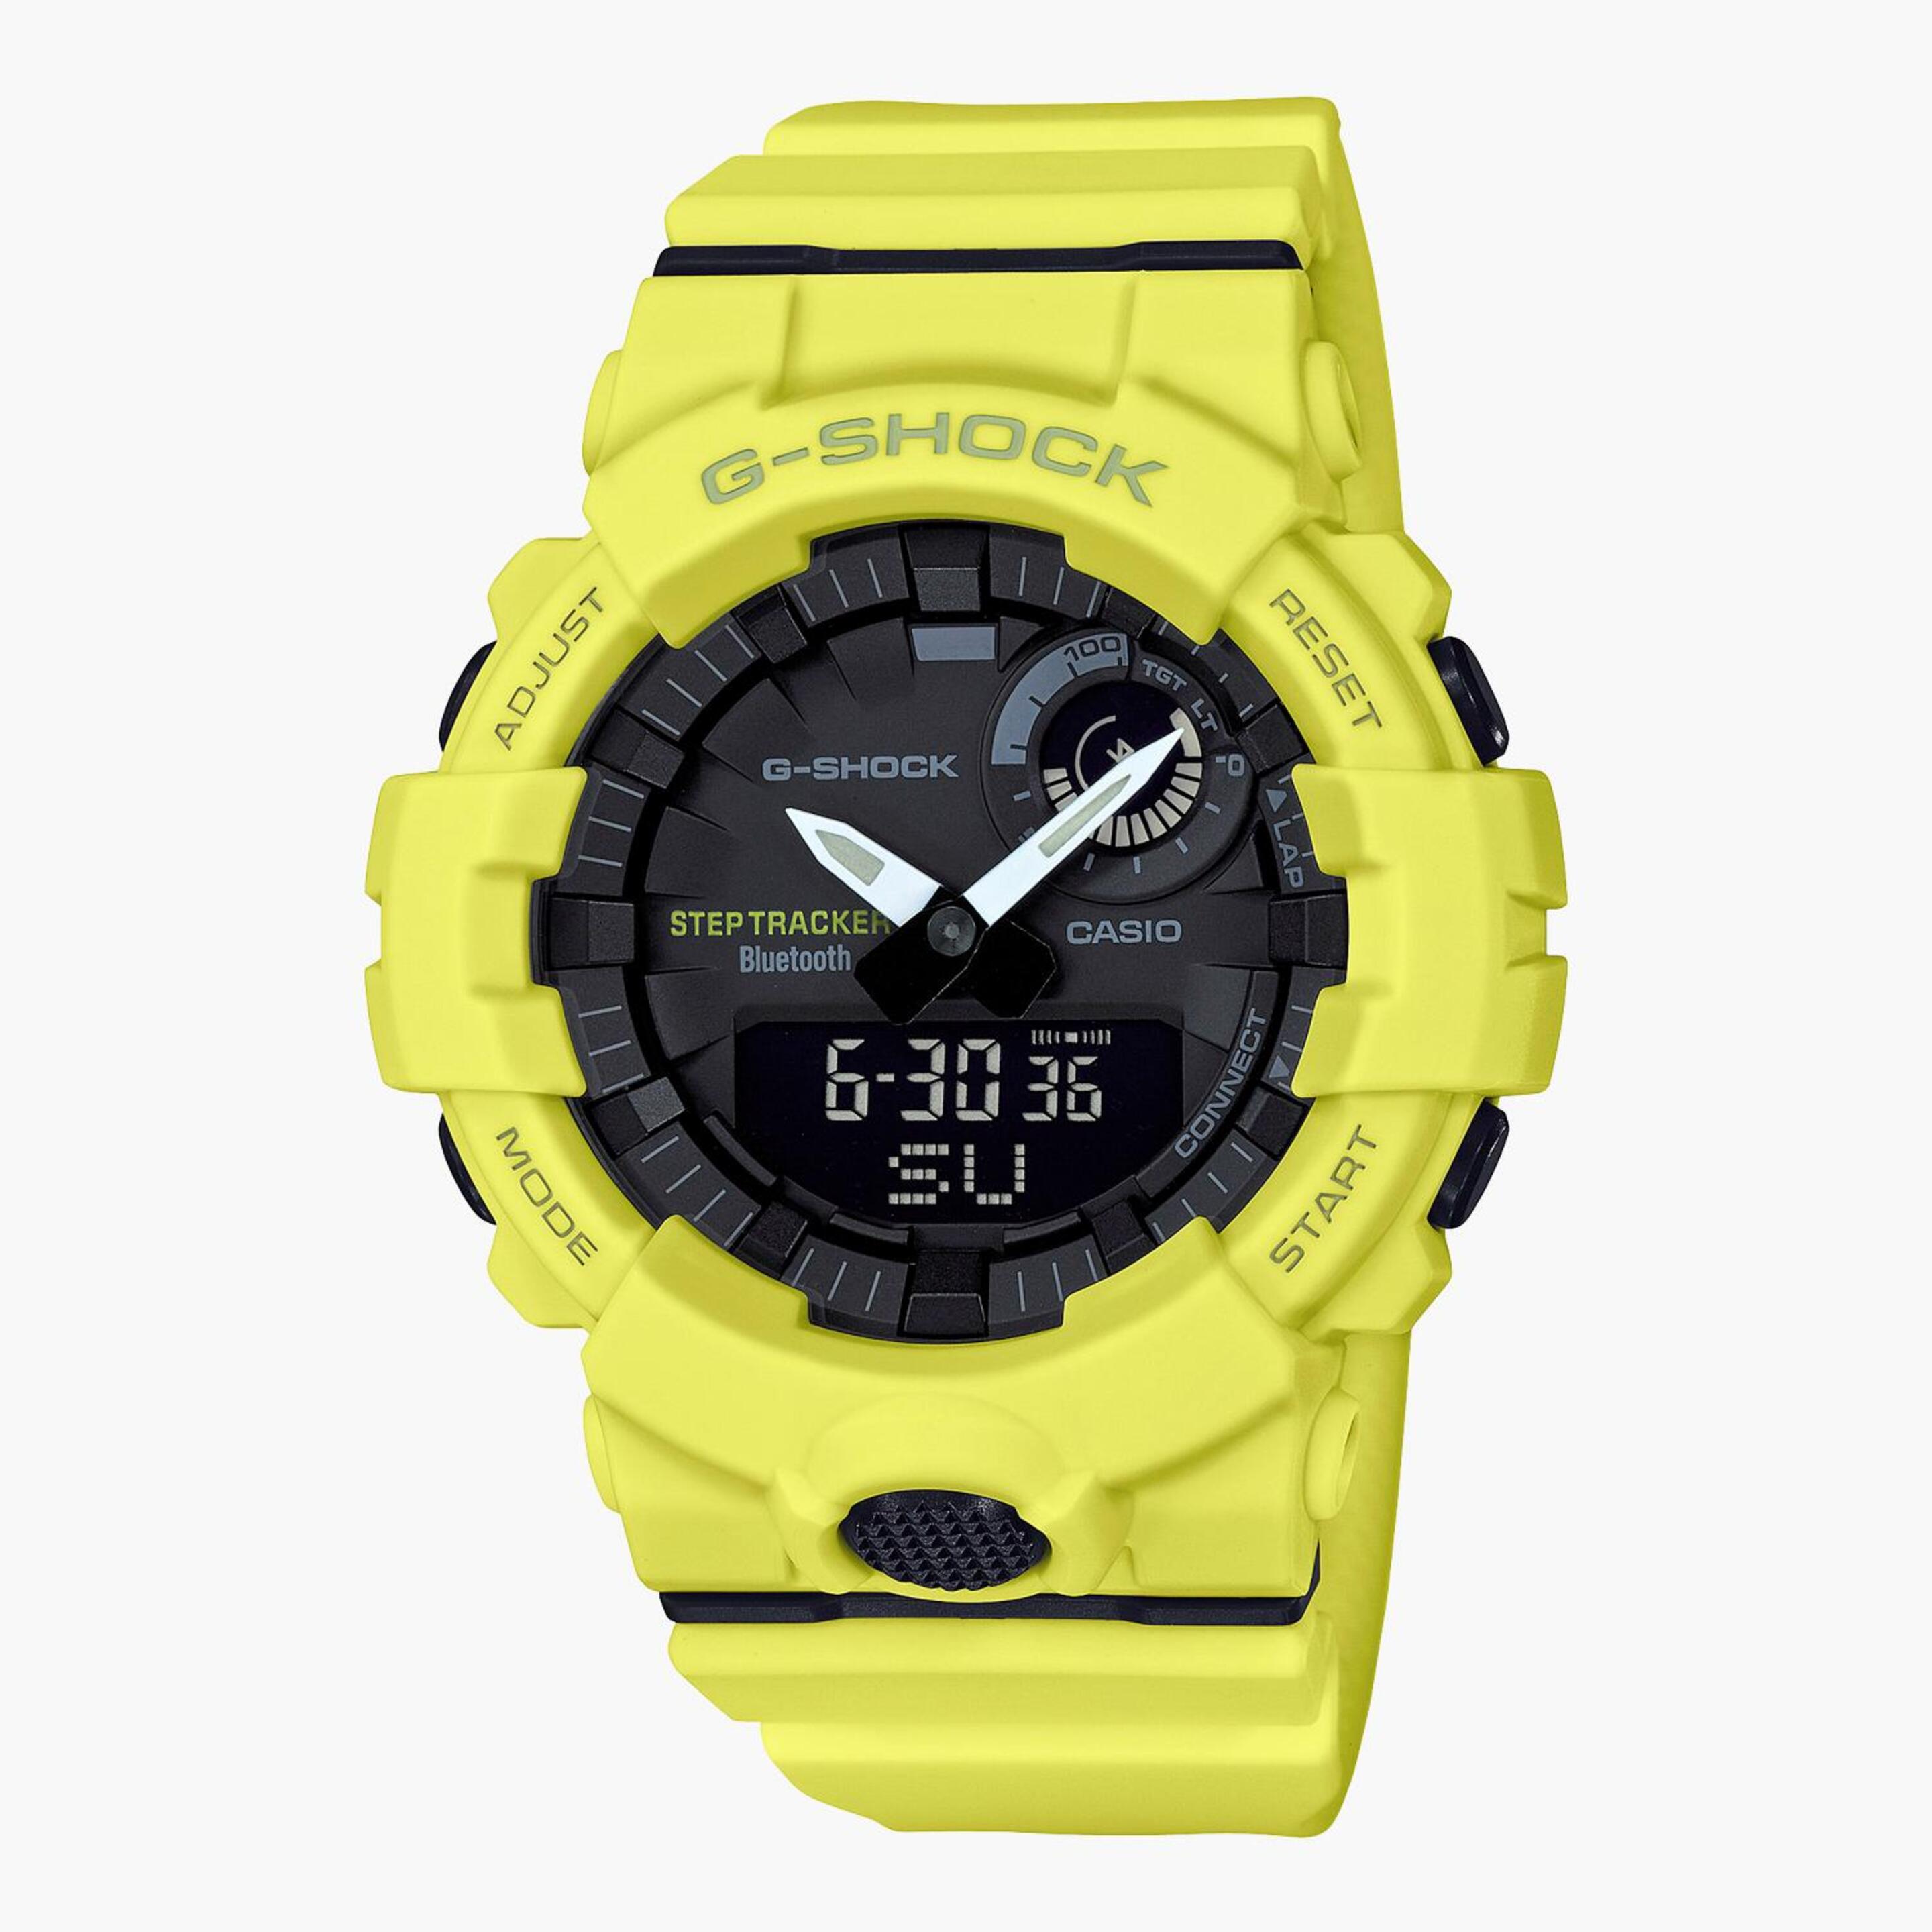 Casio G-shock G-squad Gba-800 - amarillo - Reloj Deportivo